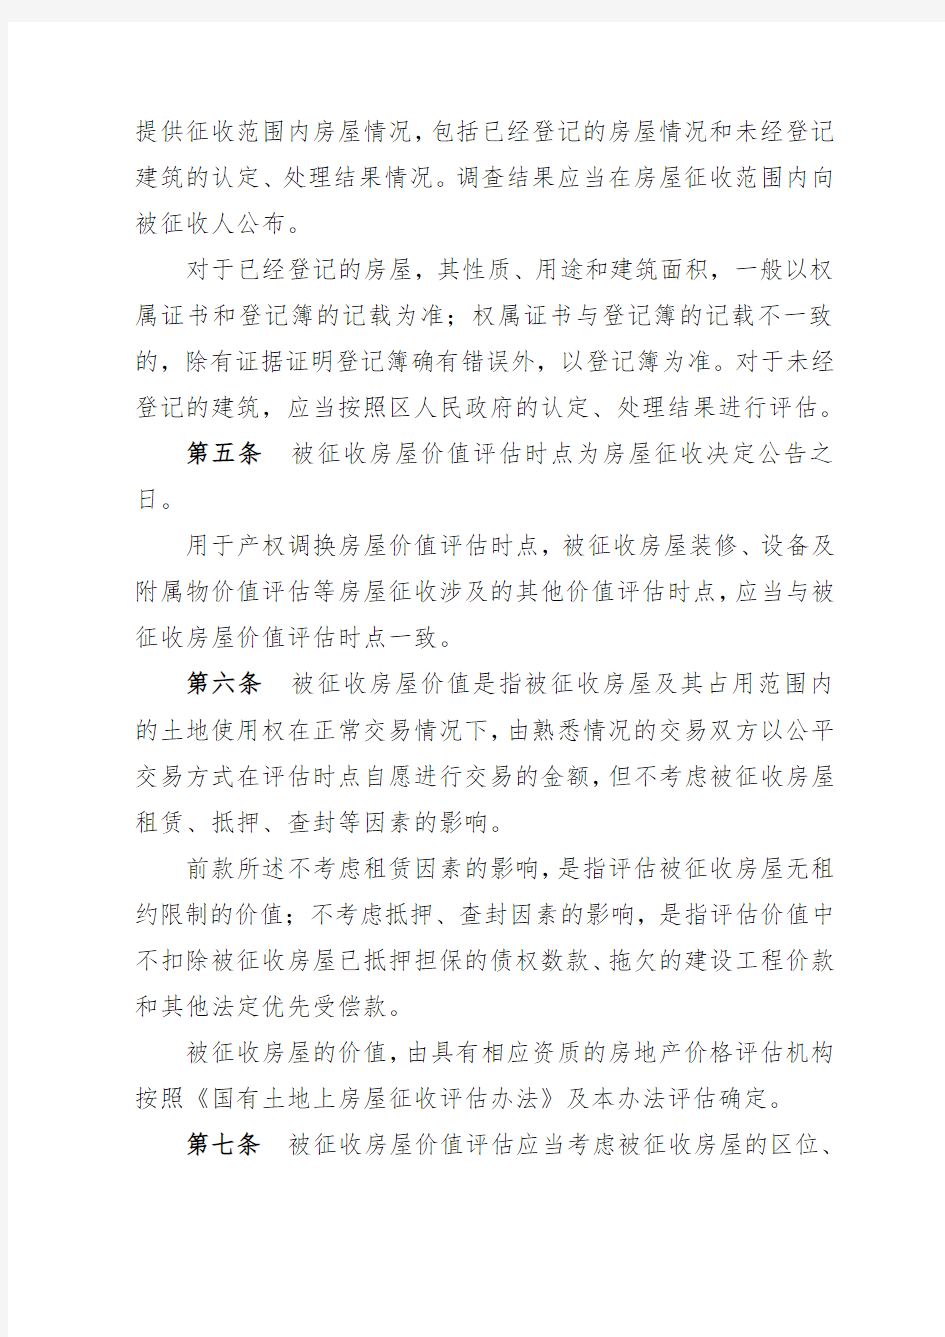 北京国有土地上房屋征收暂行办法